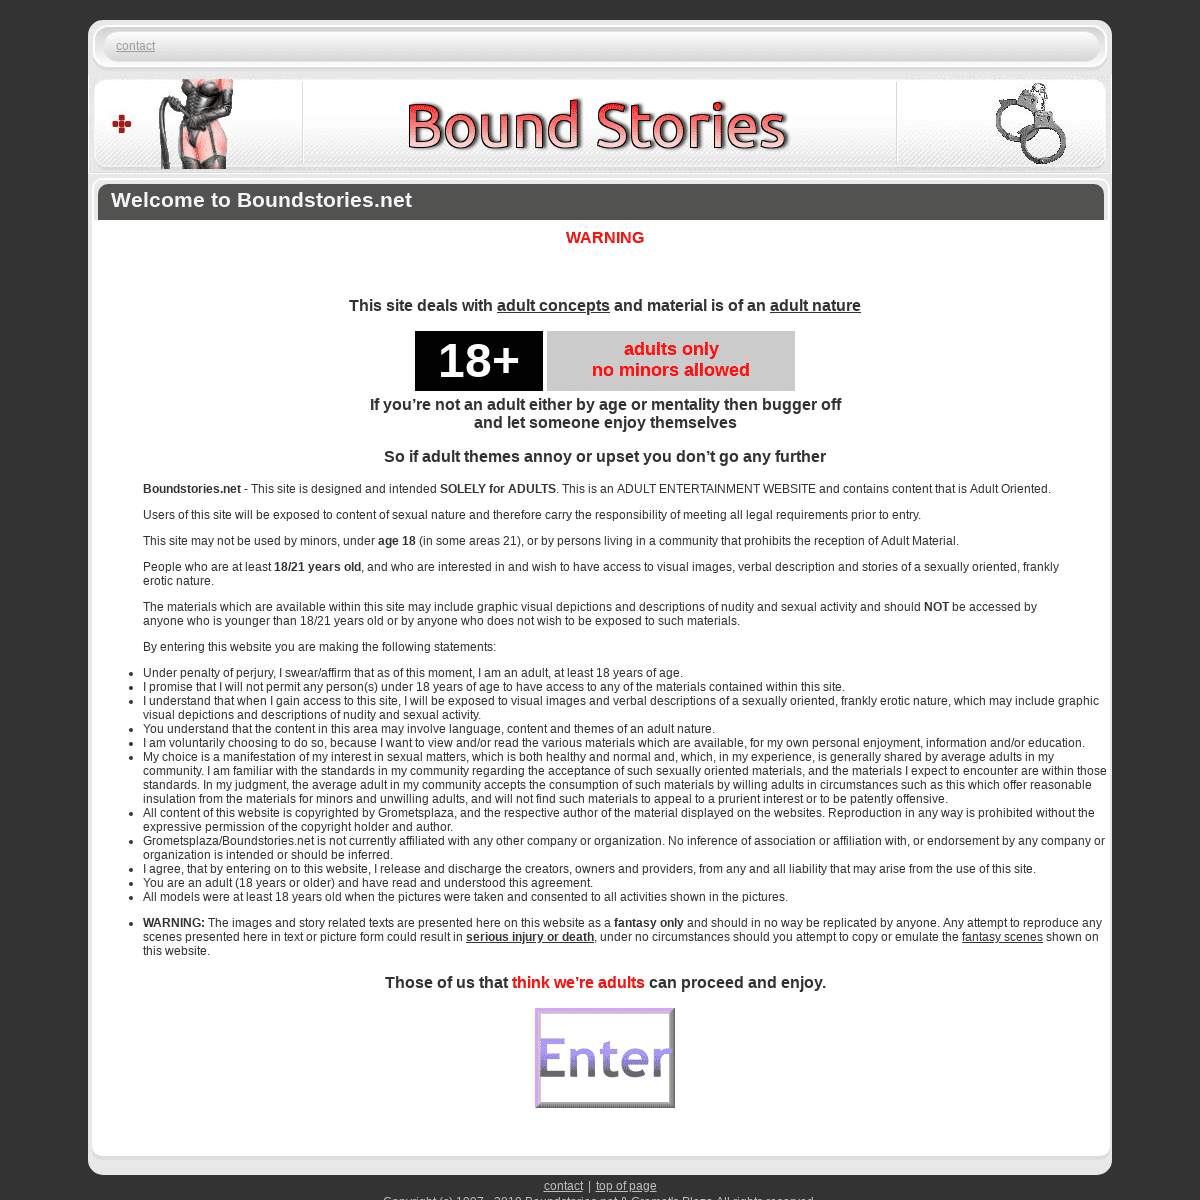 Welcome to Boundstories.net | Bound Stories | Gromet's Plaza